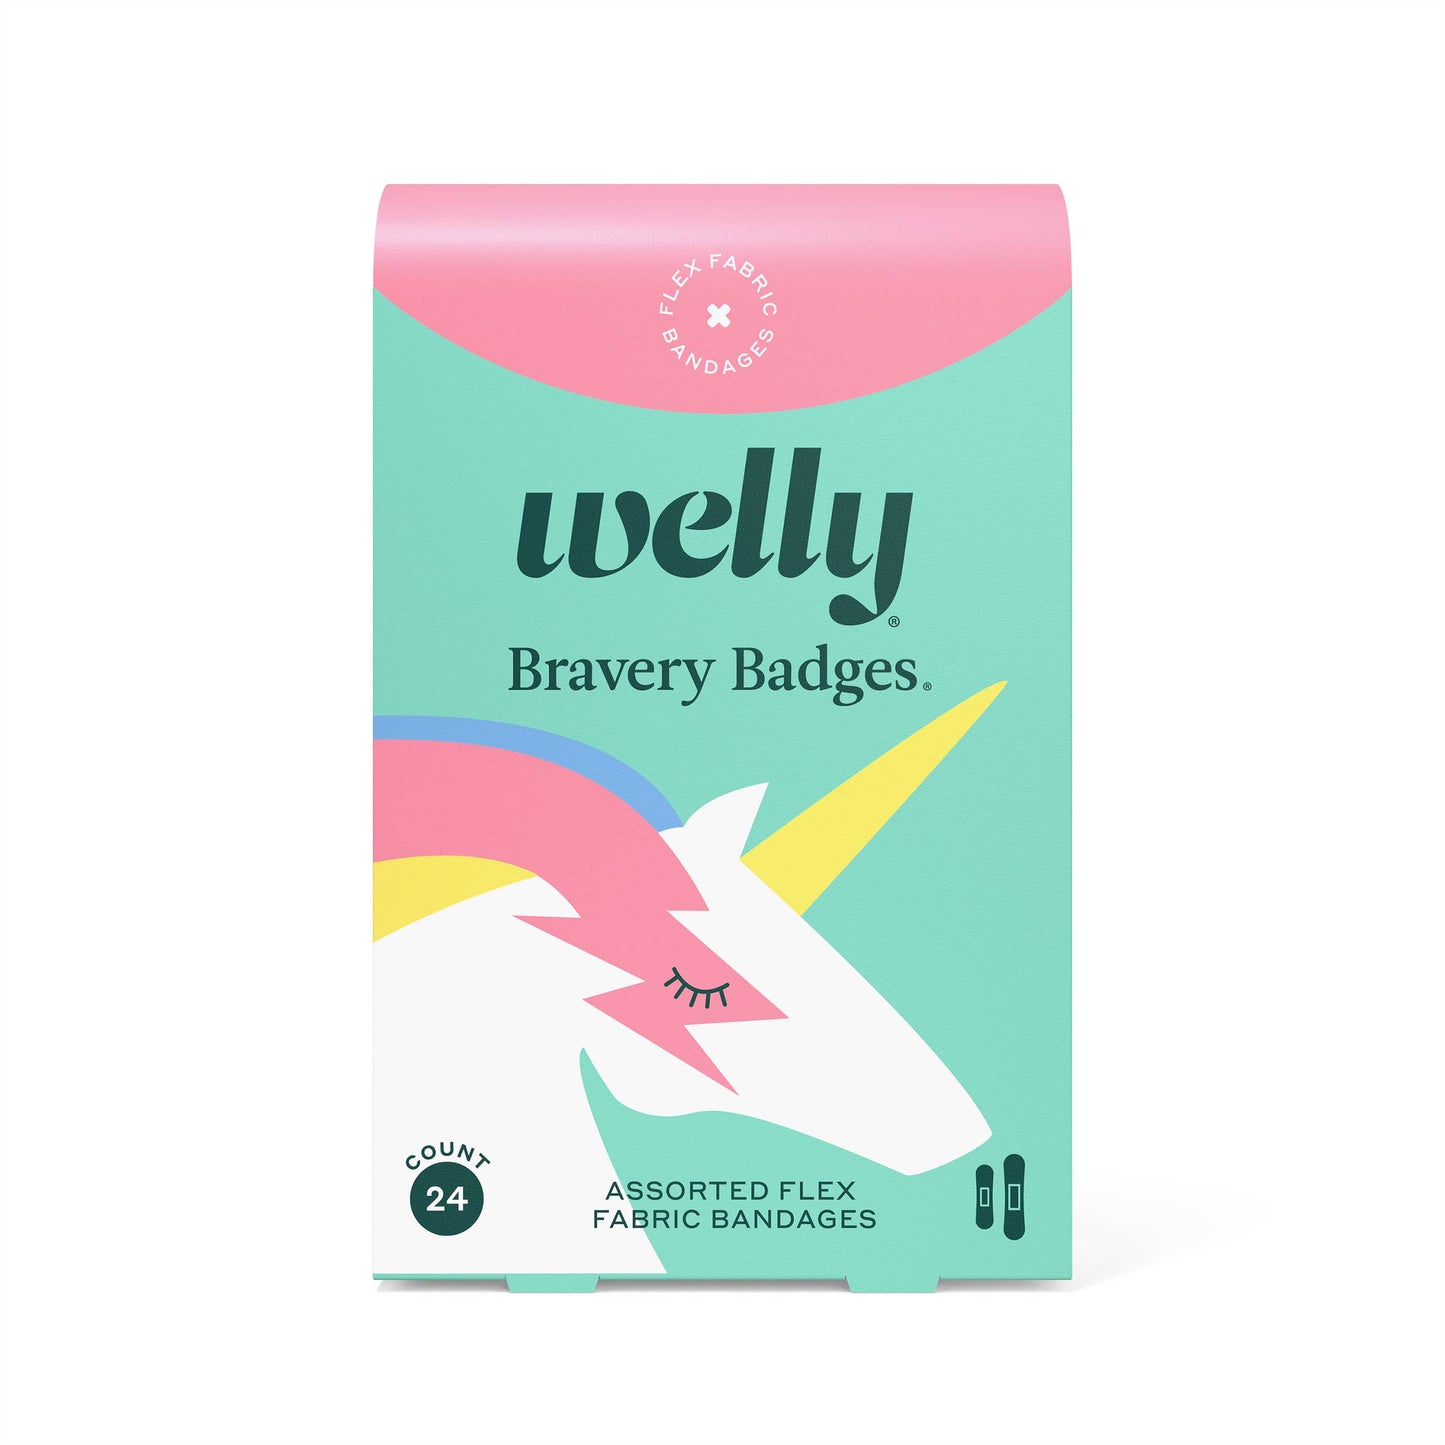 Unicorn Bravery Badges bandage 24 pack by Welly